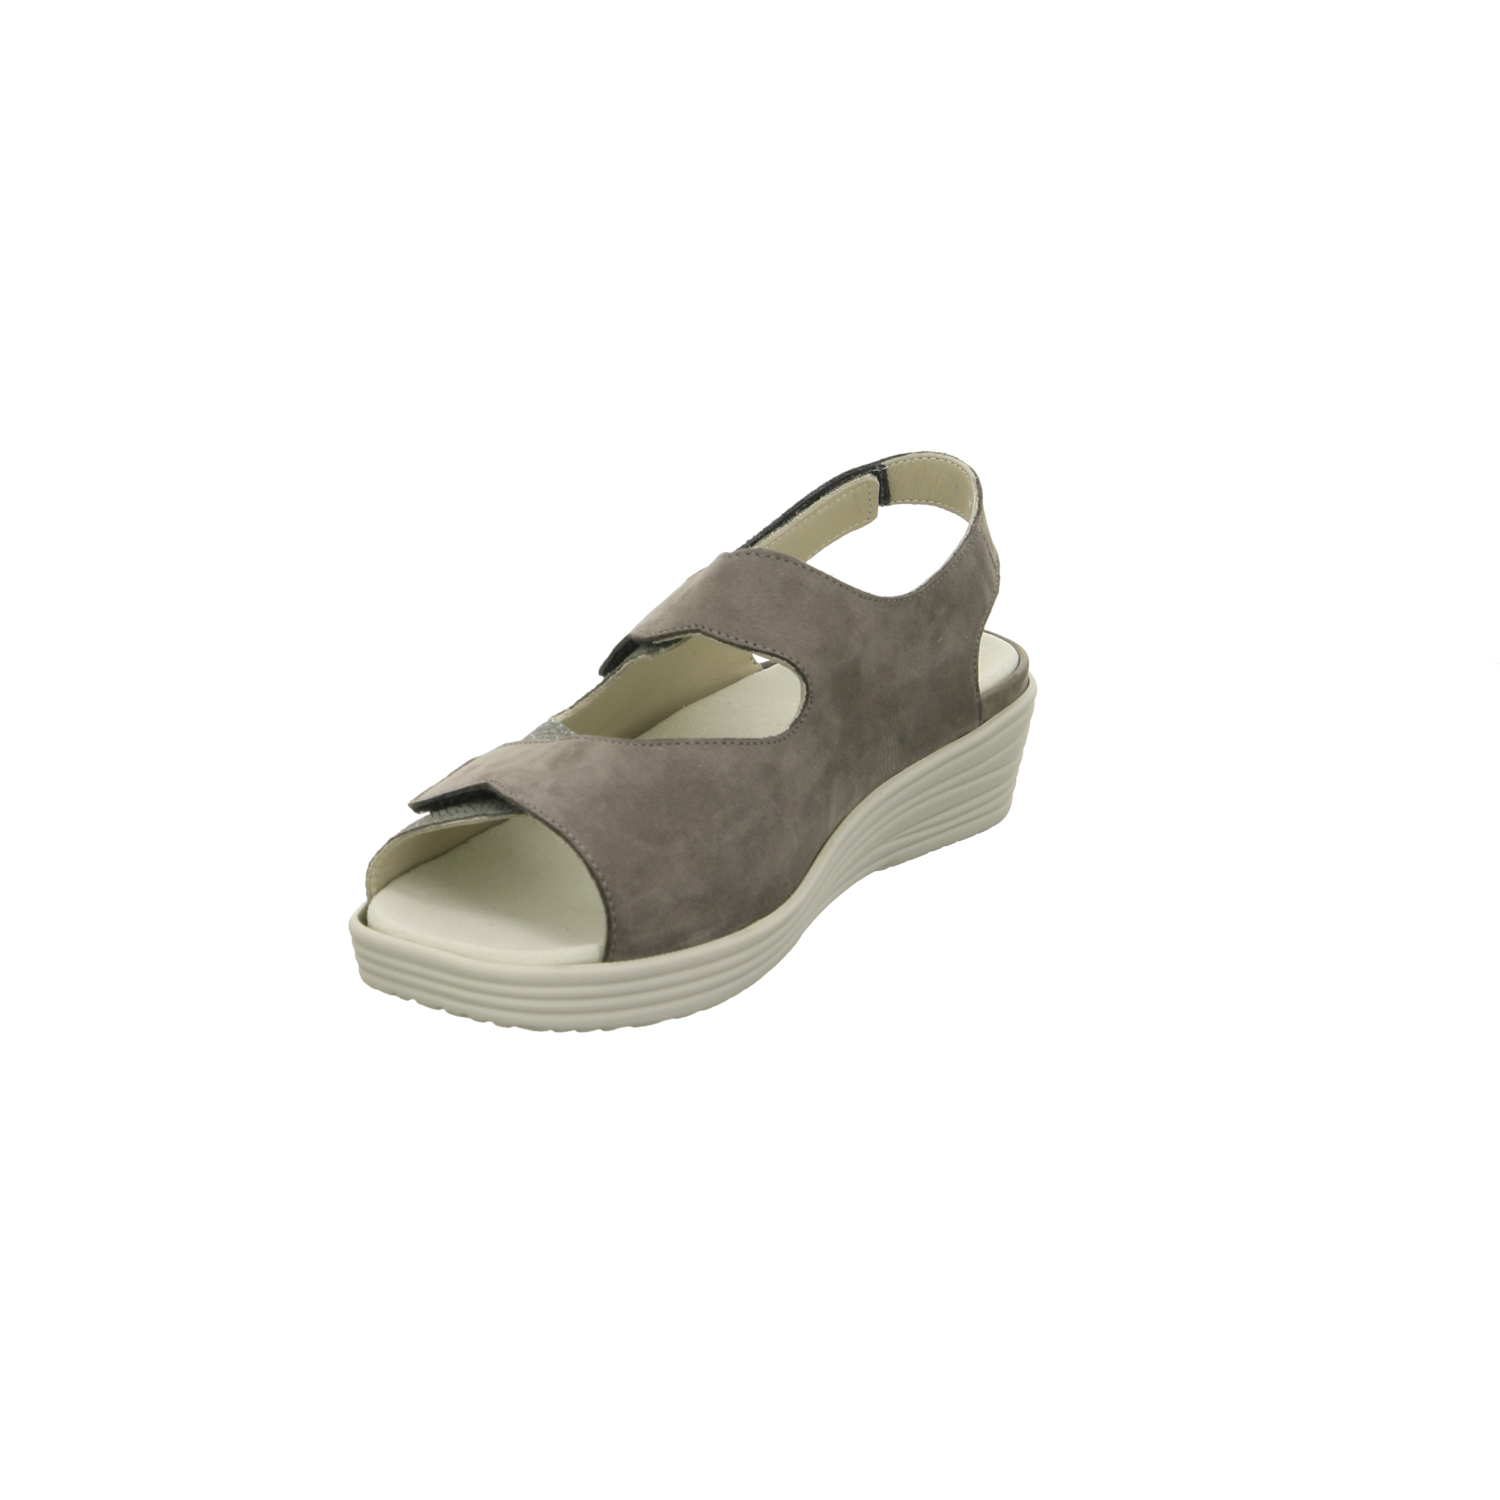 Ströber Comfort-Sandalette taupe